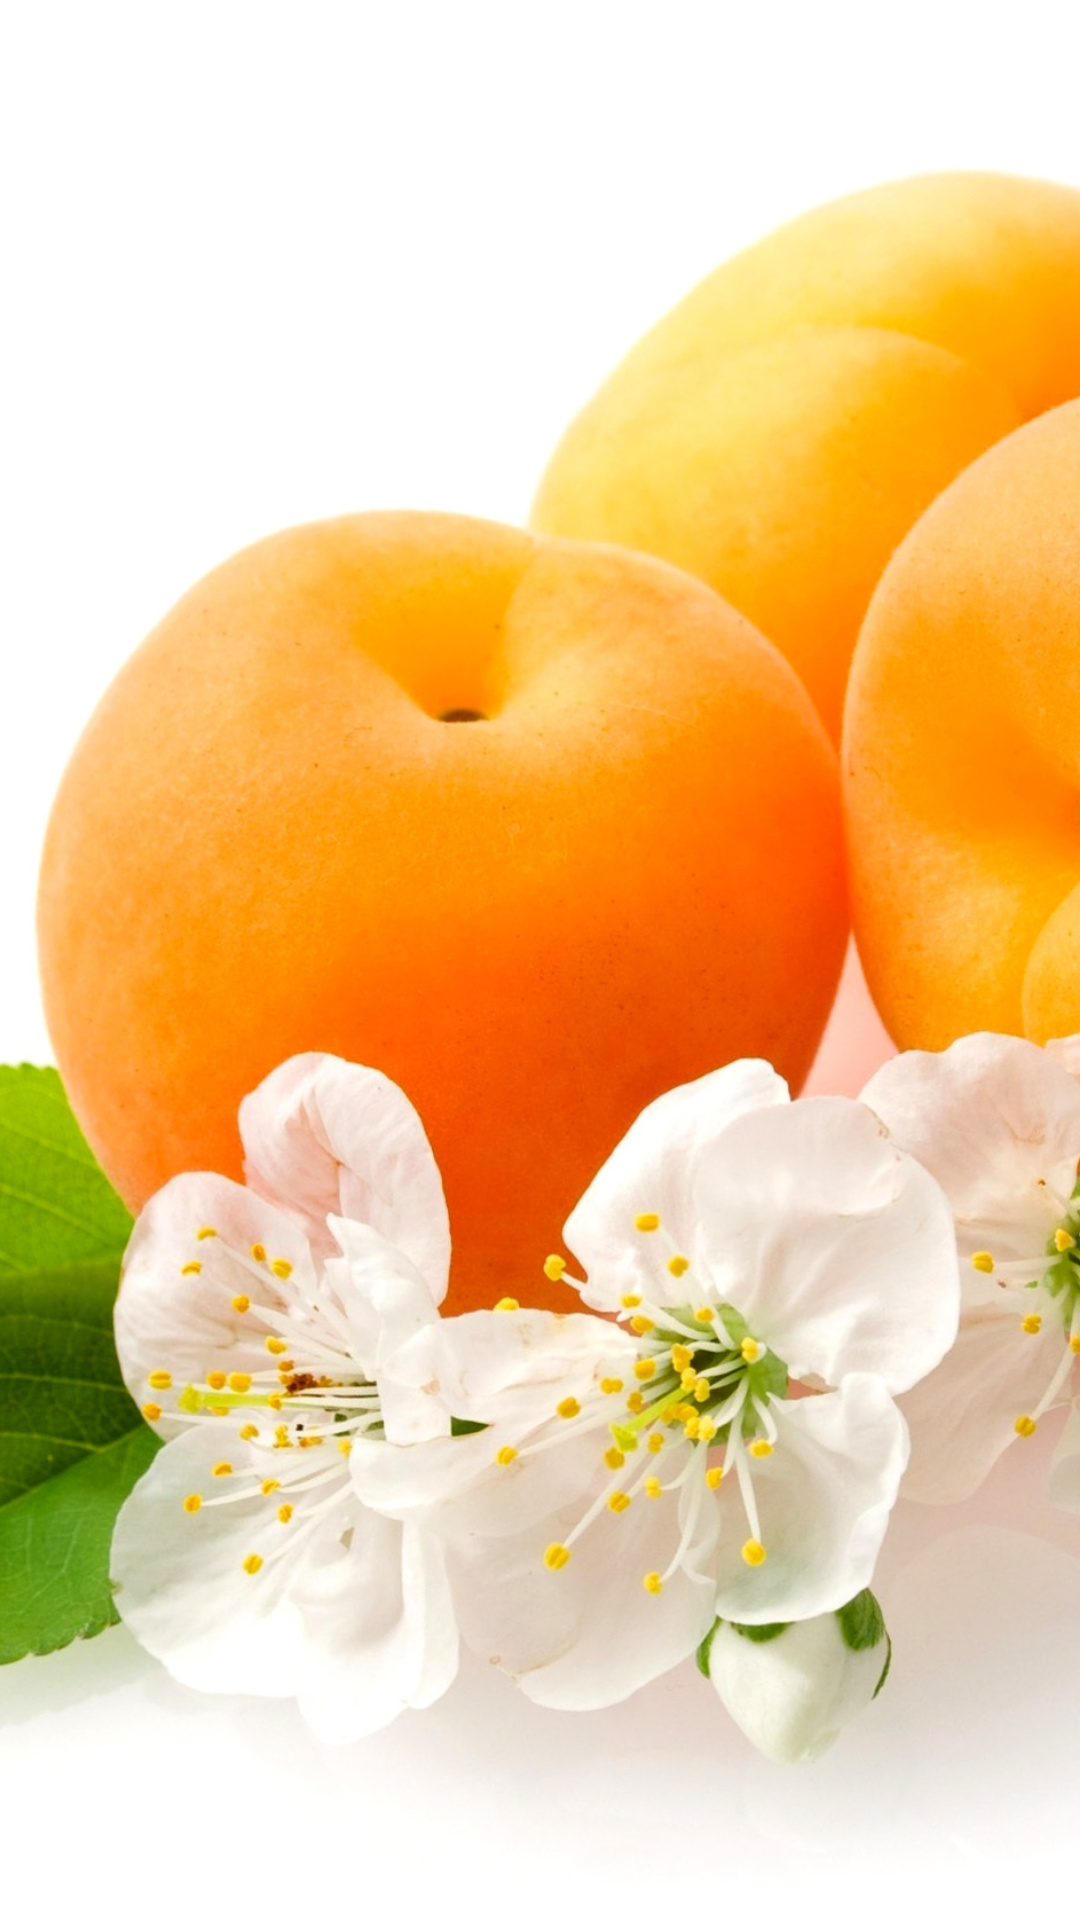 Apricot Fruit wallpaper 1080x1920